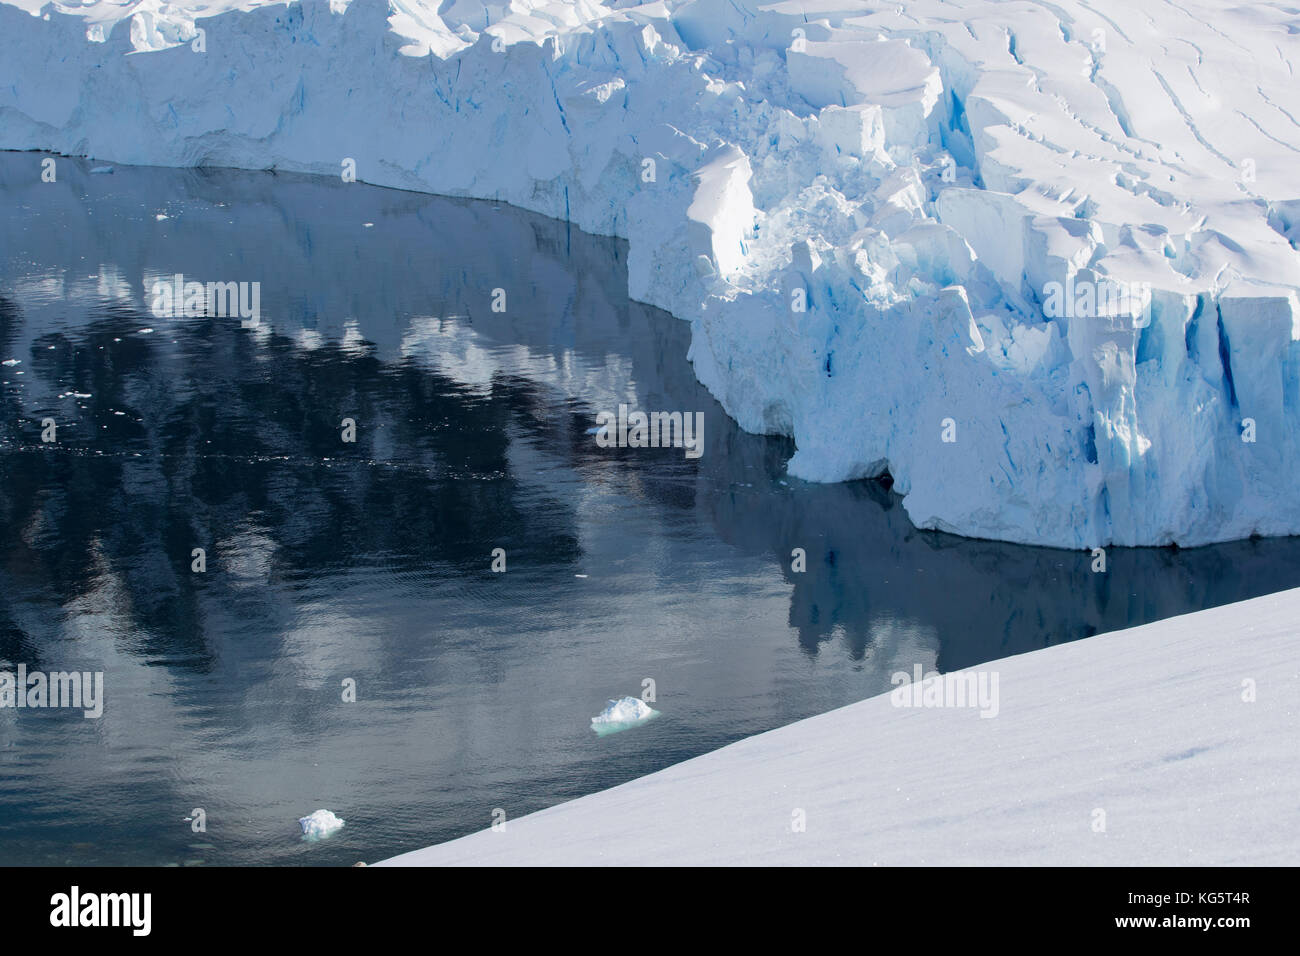 L'eau et des glaciers de la péninsule antarctique, réflexions Banque D'Images